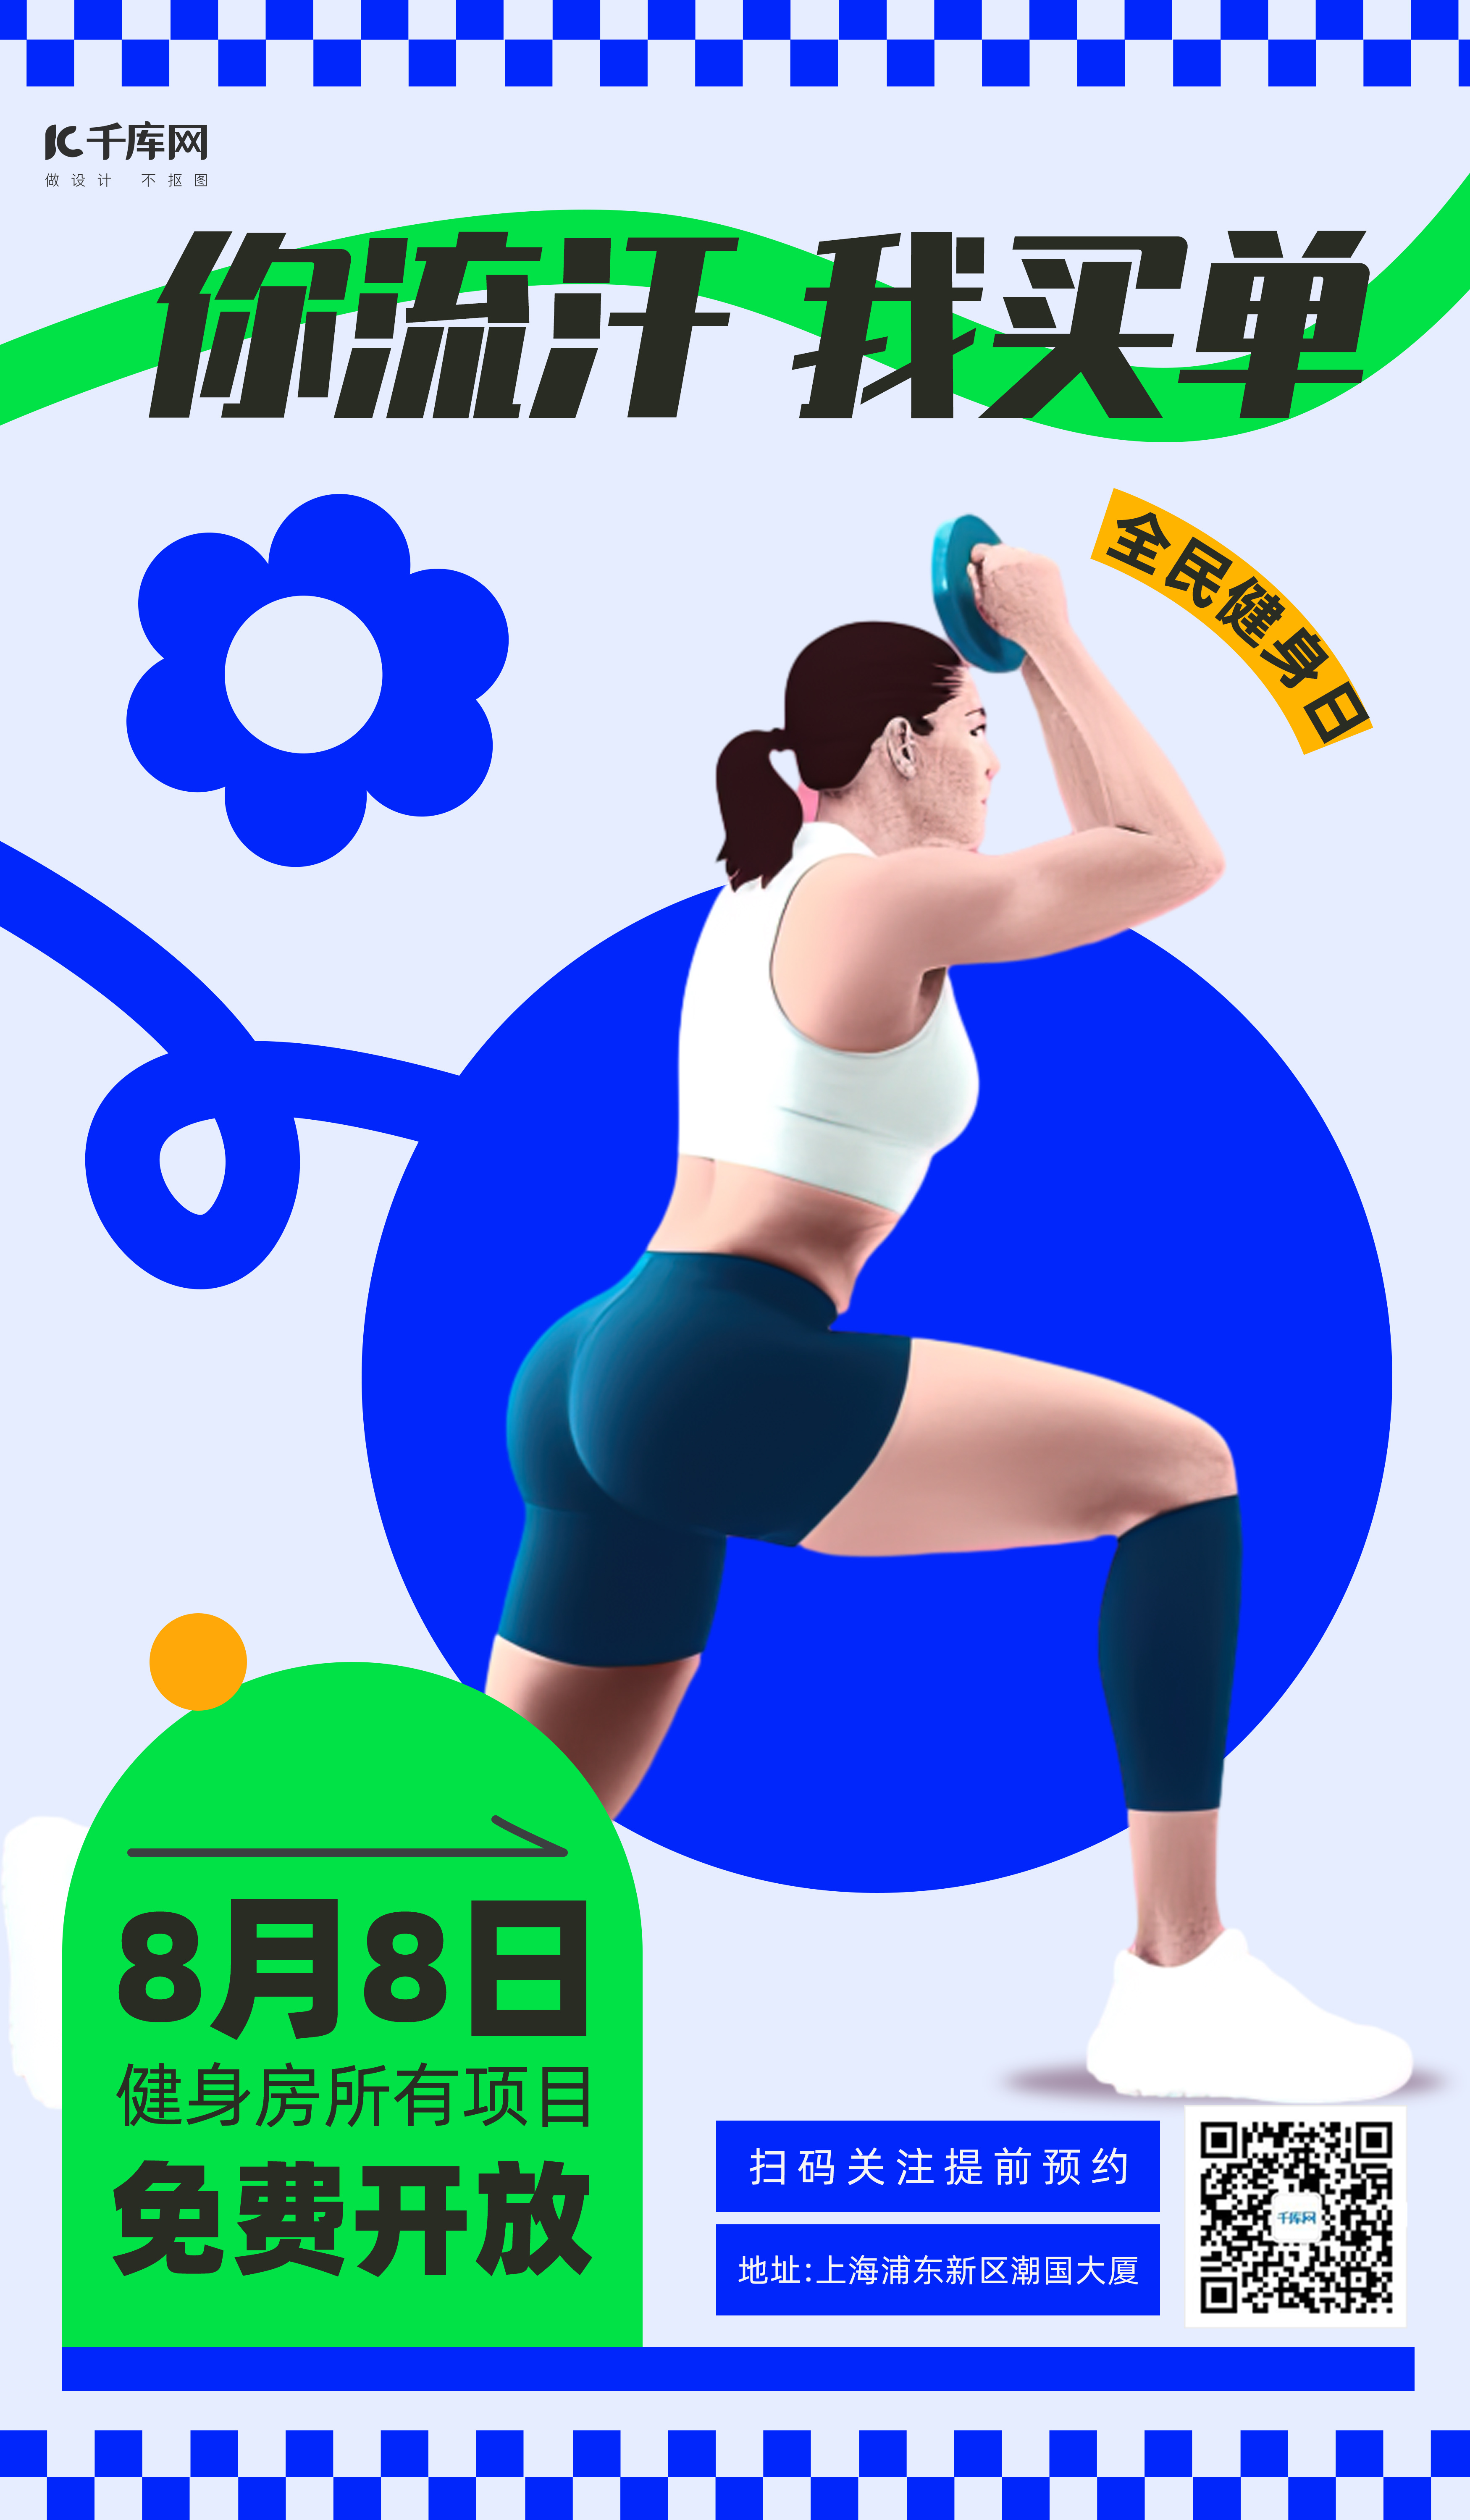 健身房促销女健身运动员蓝绿潮流风广告促销海报图片